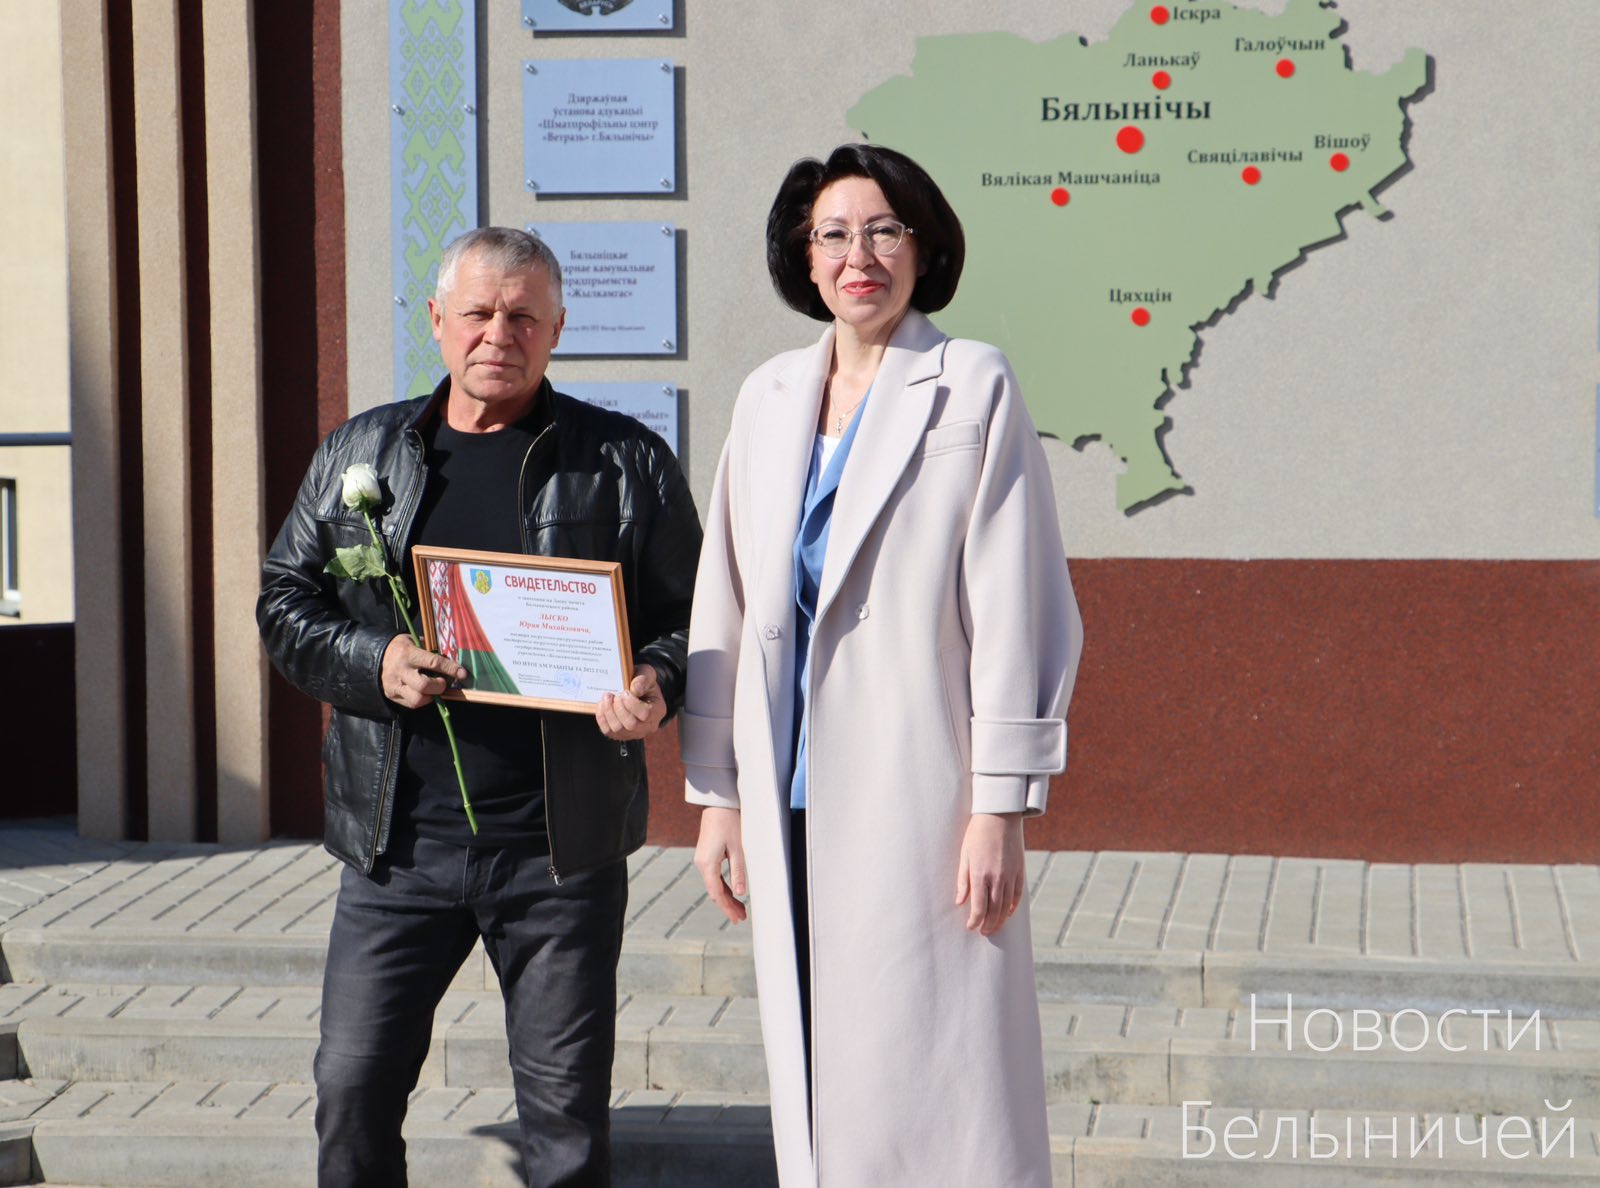 Торжественное открытие обновлённой Доски почёта Белыничского района состоялось вчера в Белыничах